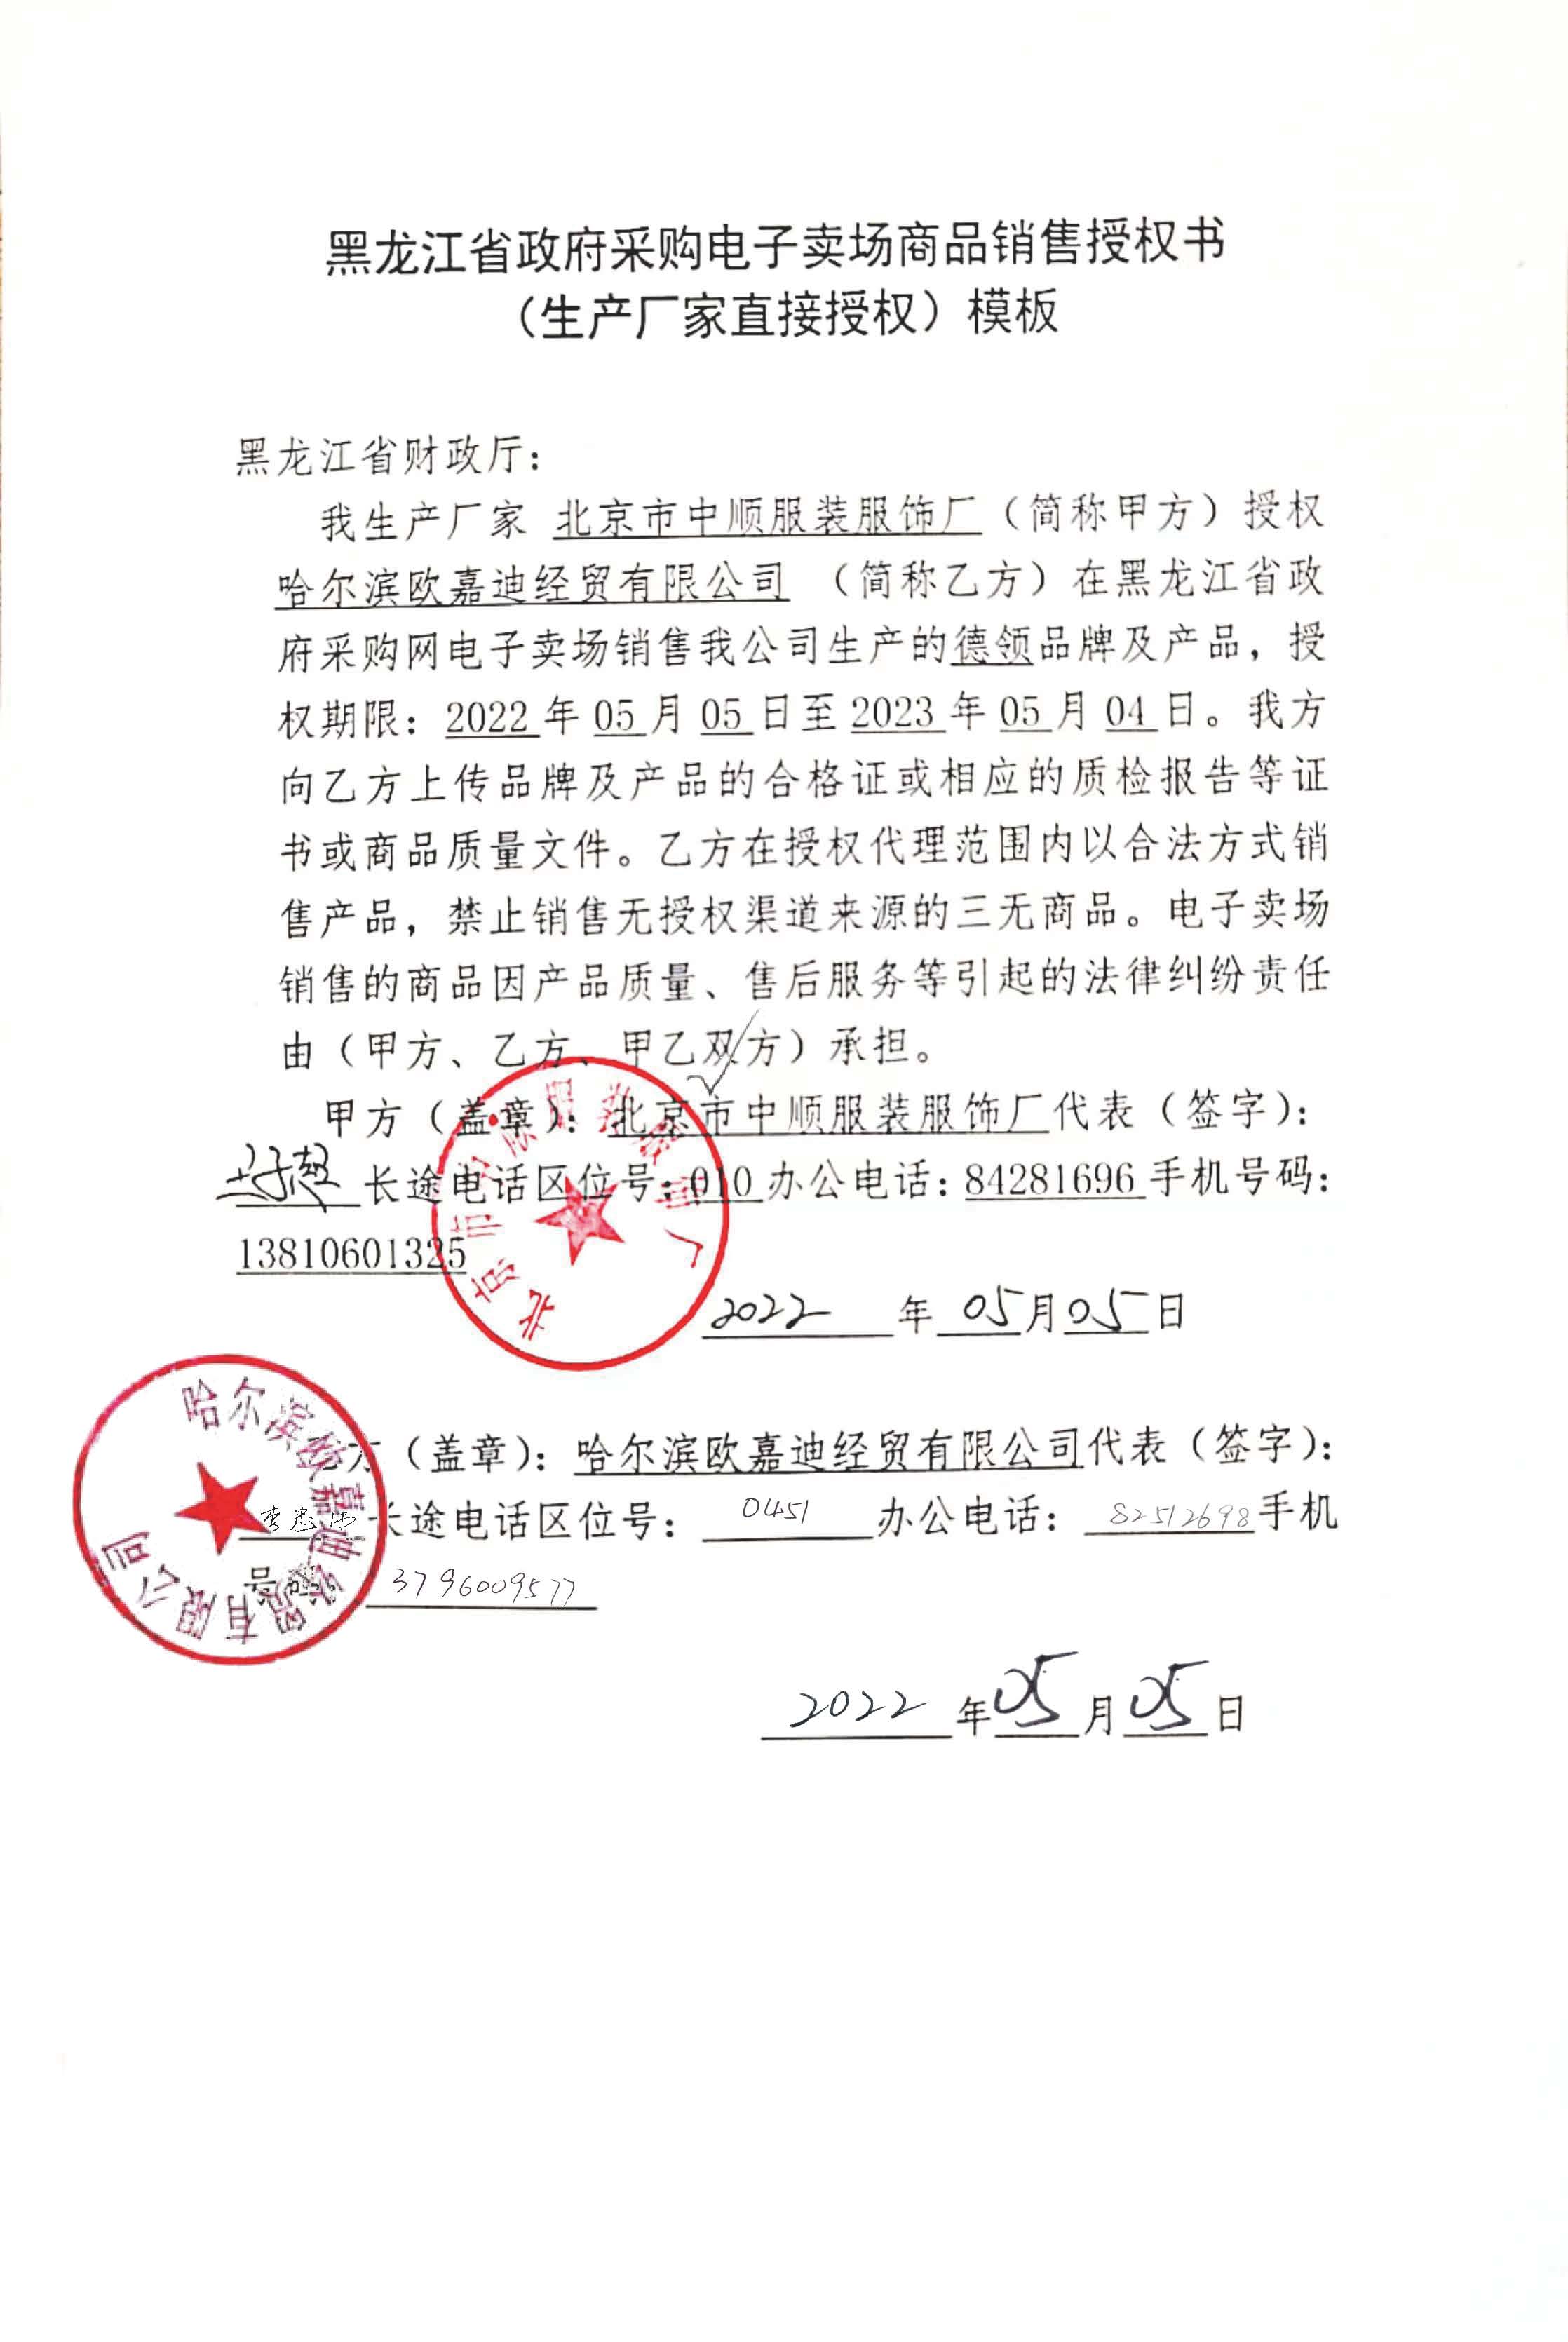 北京市中顺服装服饰厂授权期限2022年05月05-2022年05月04日.jpg